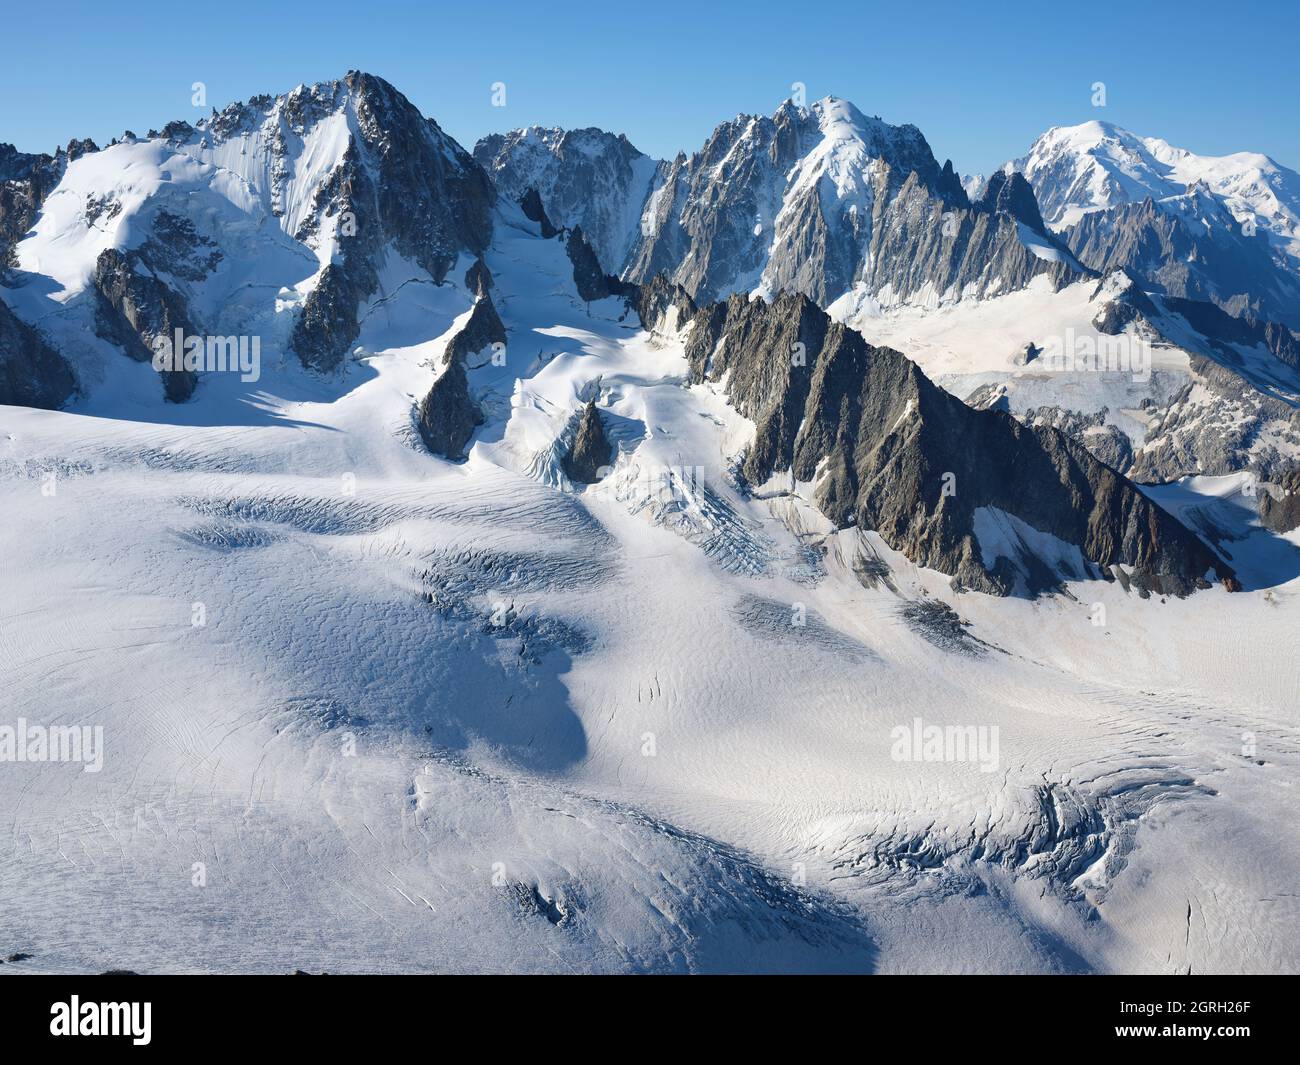 AERIAL VIEW. Left to right; Aiguille du Chardonnet (3824m), Aiguille Verte (4122m), Mont Blanc (4807m). Chamonix, Haute-Savoie, France. Stock Photo